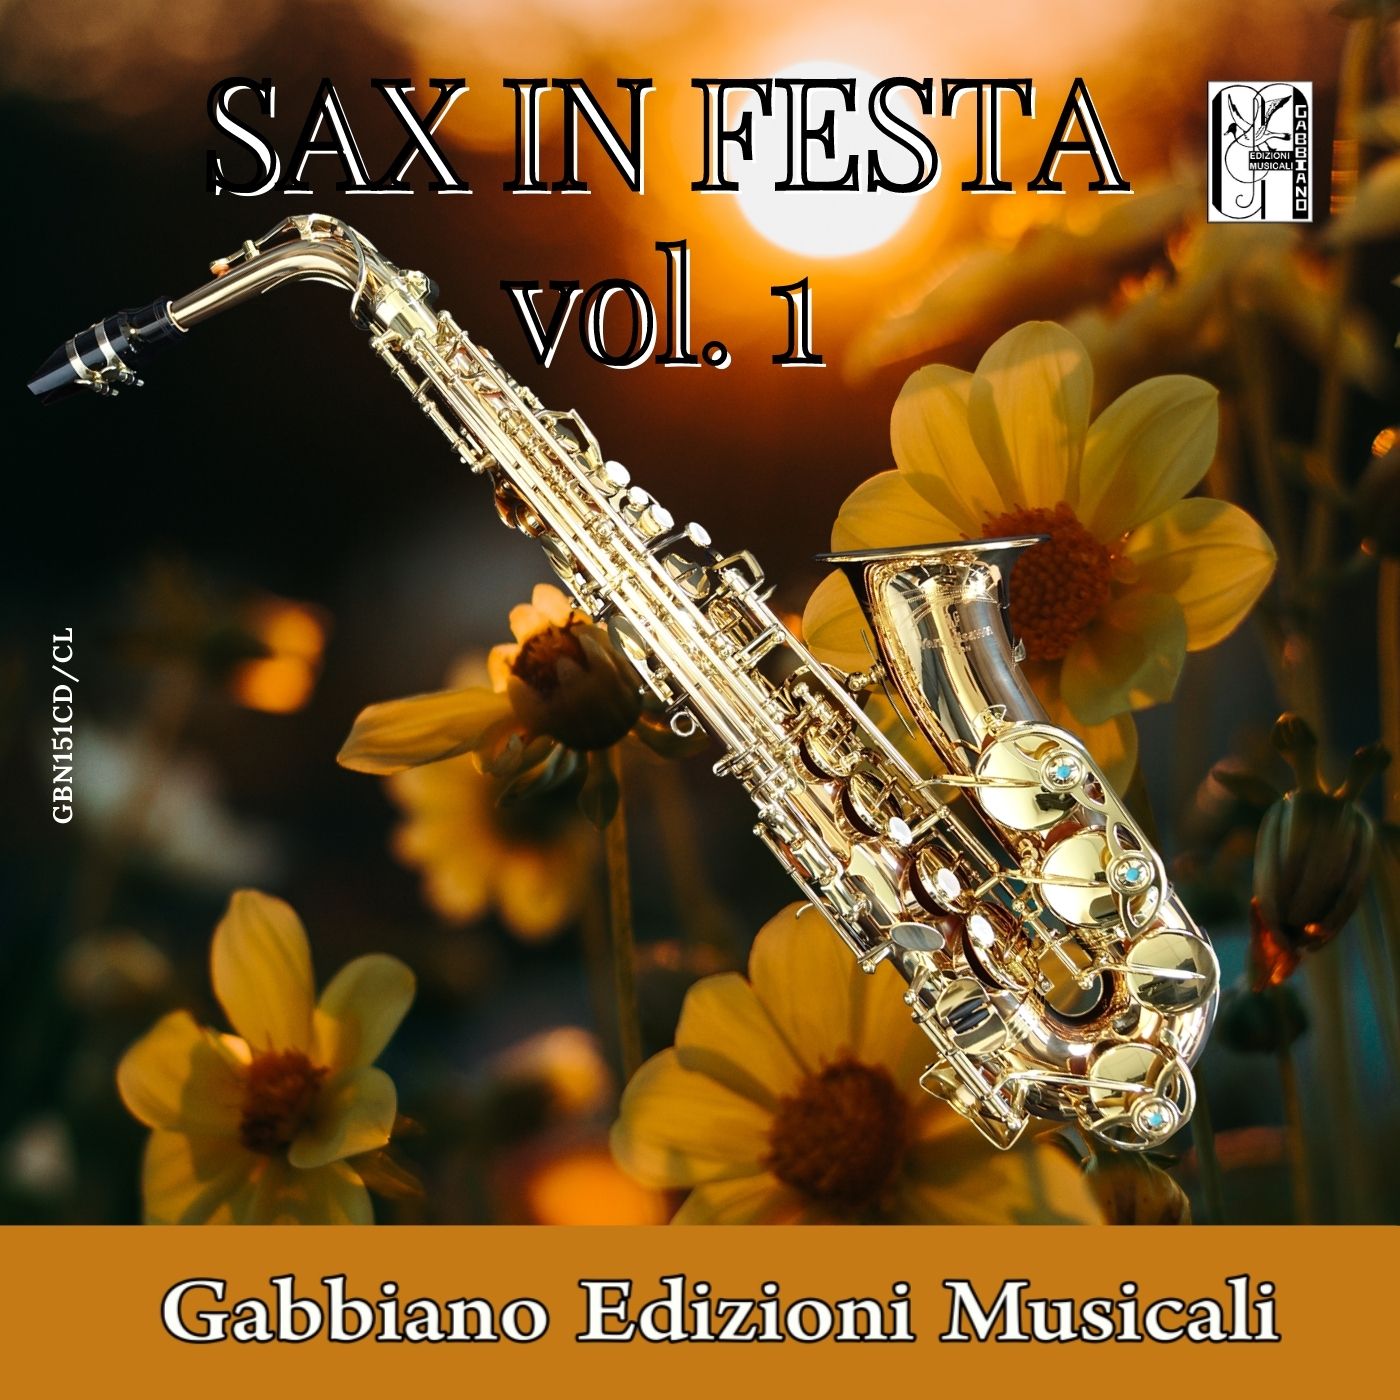 GBN151CD/CL - SAX IN FESTA Vol. 1 - Volume 51